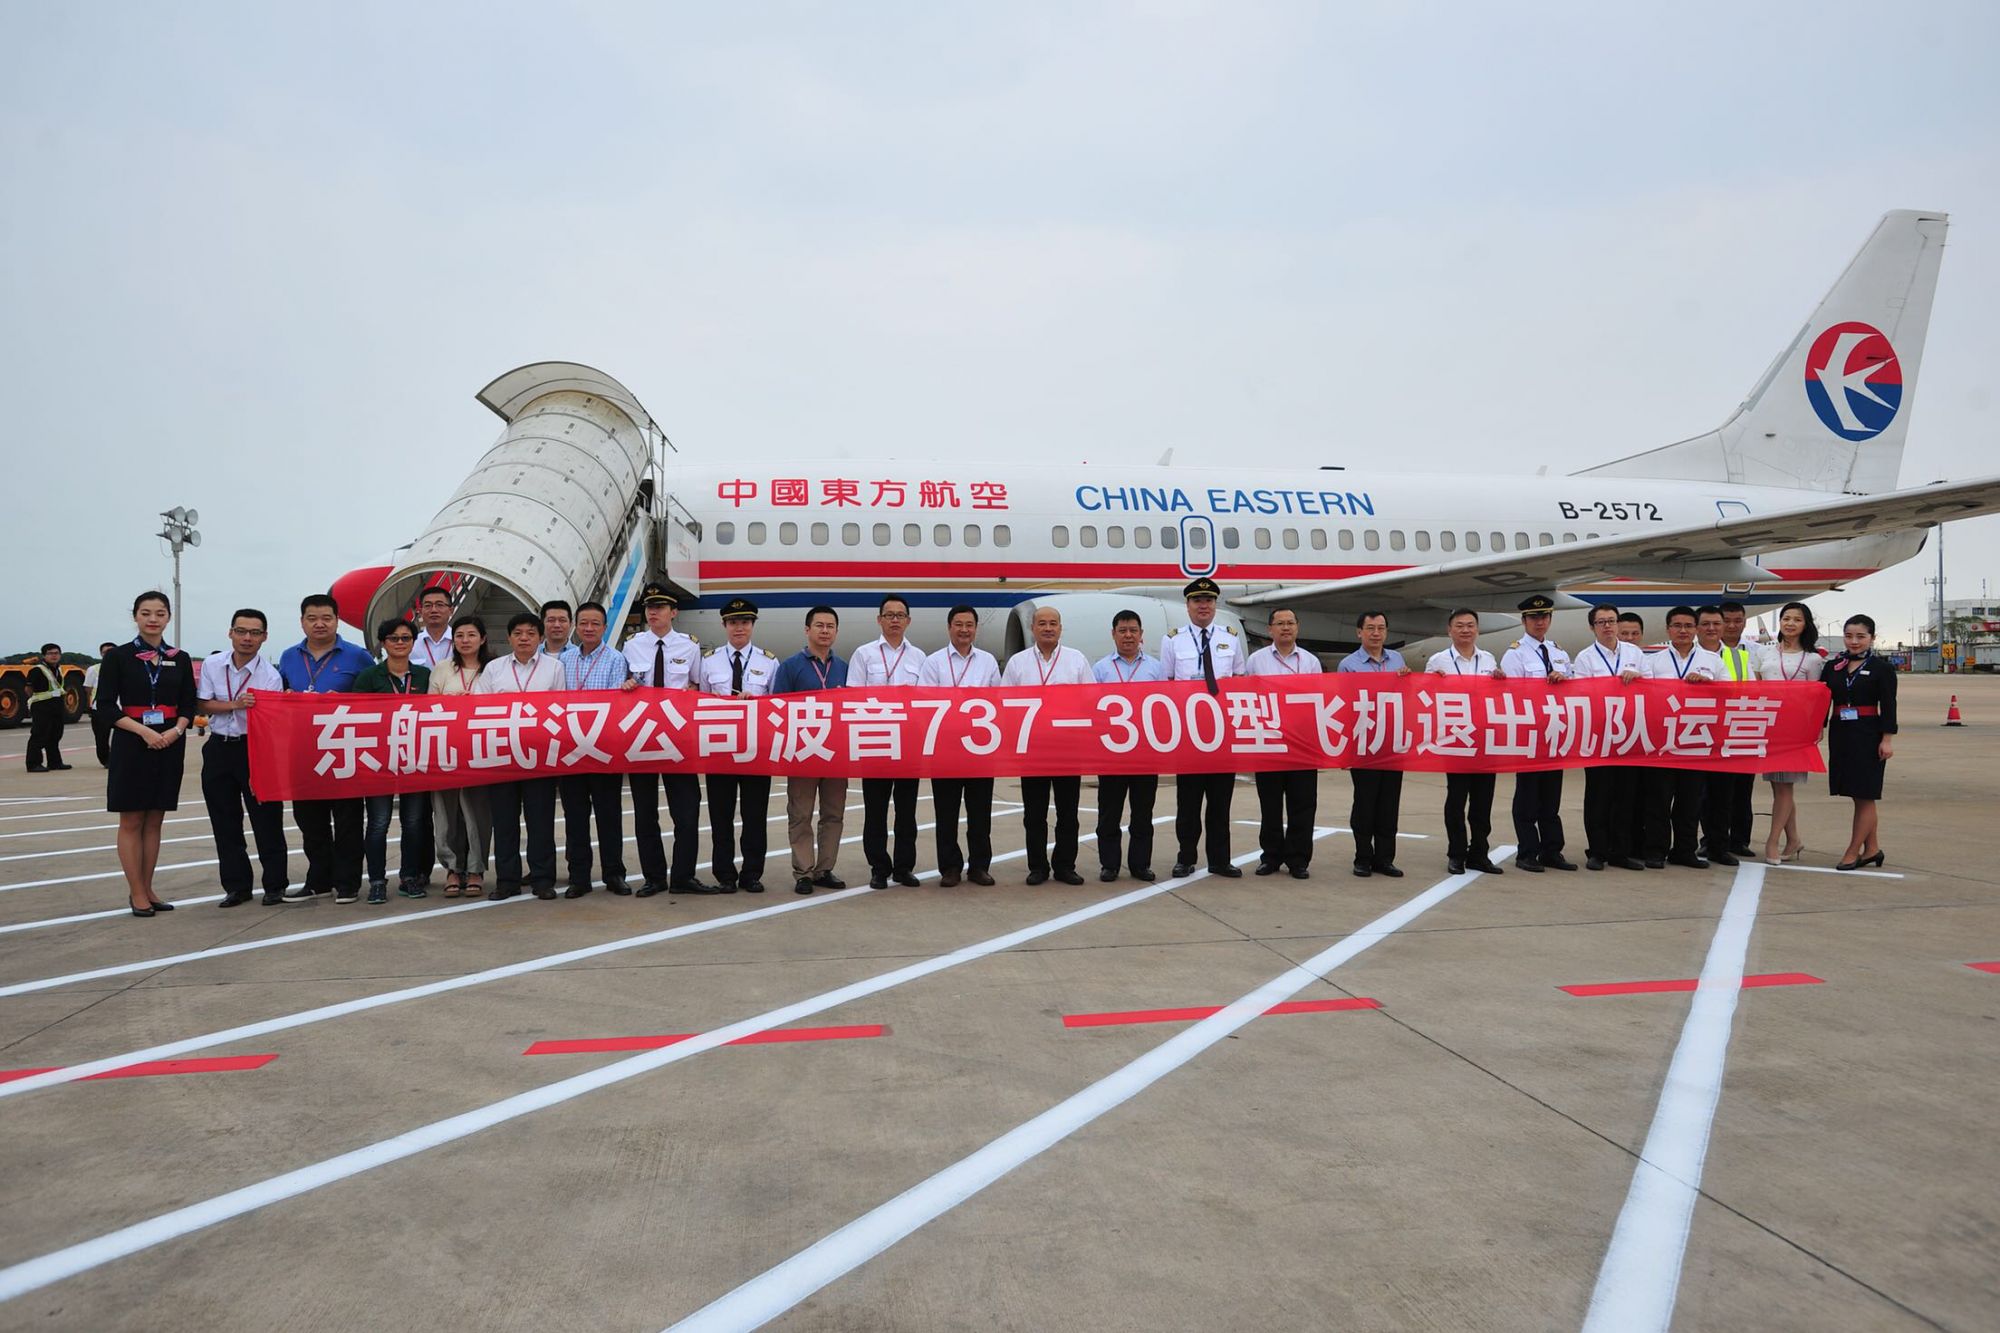 年8月21日落户汉口王家墩机场,此后,东航武汉公司又引进了8架同型飞机